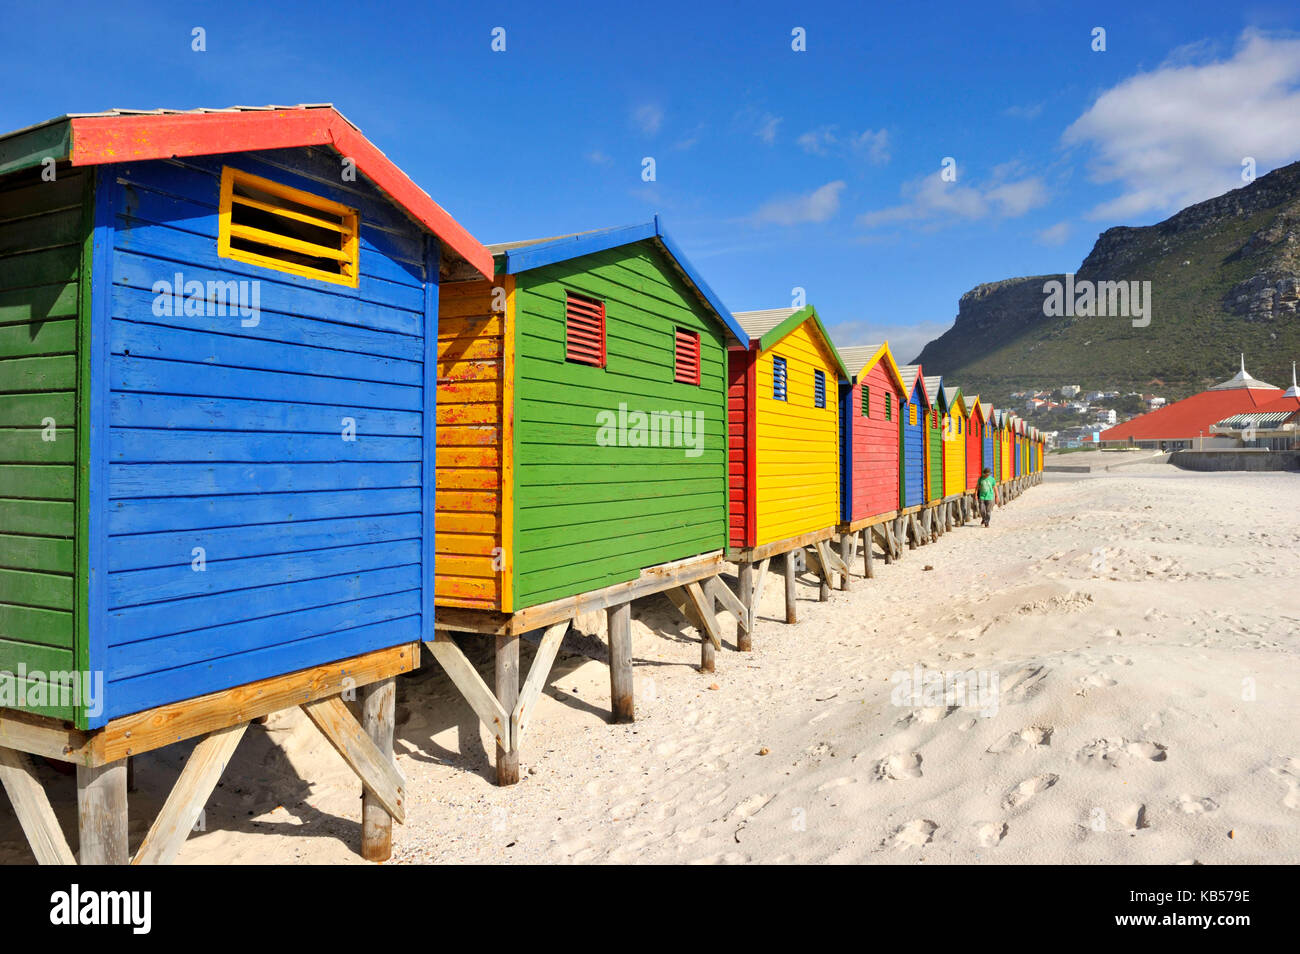 South Africa, Western Cape, Cape Peninsula, Muizenberg, the beach, beach cabins Stock Photo